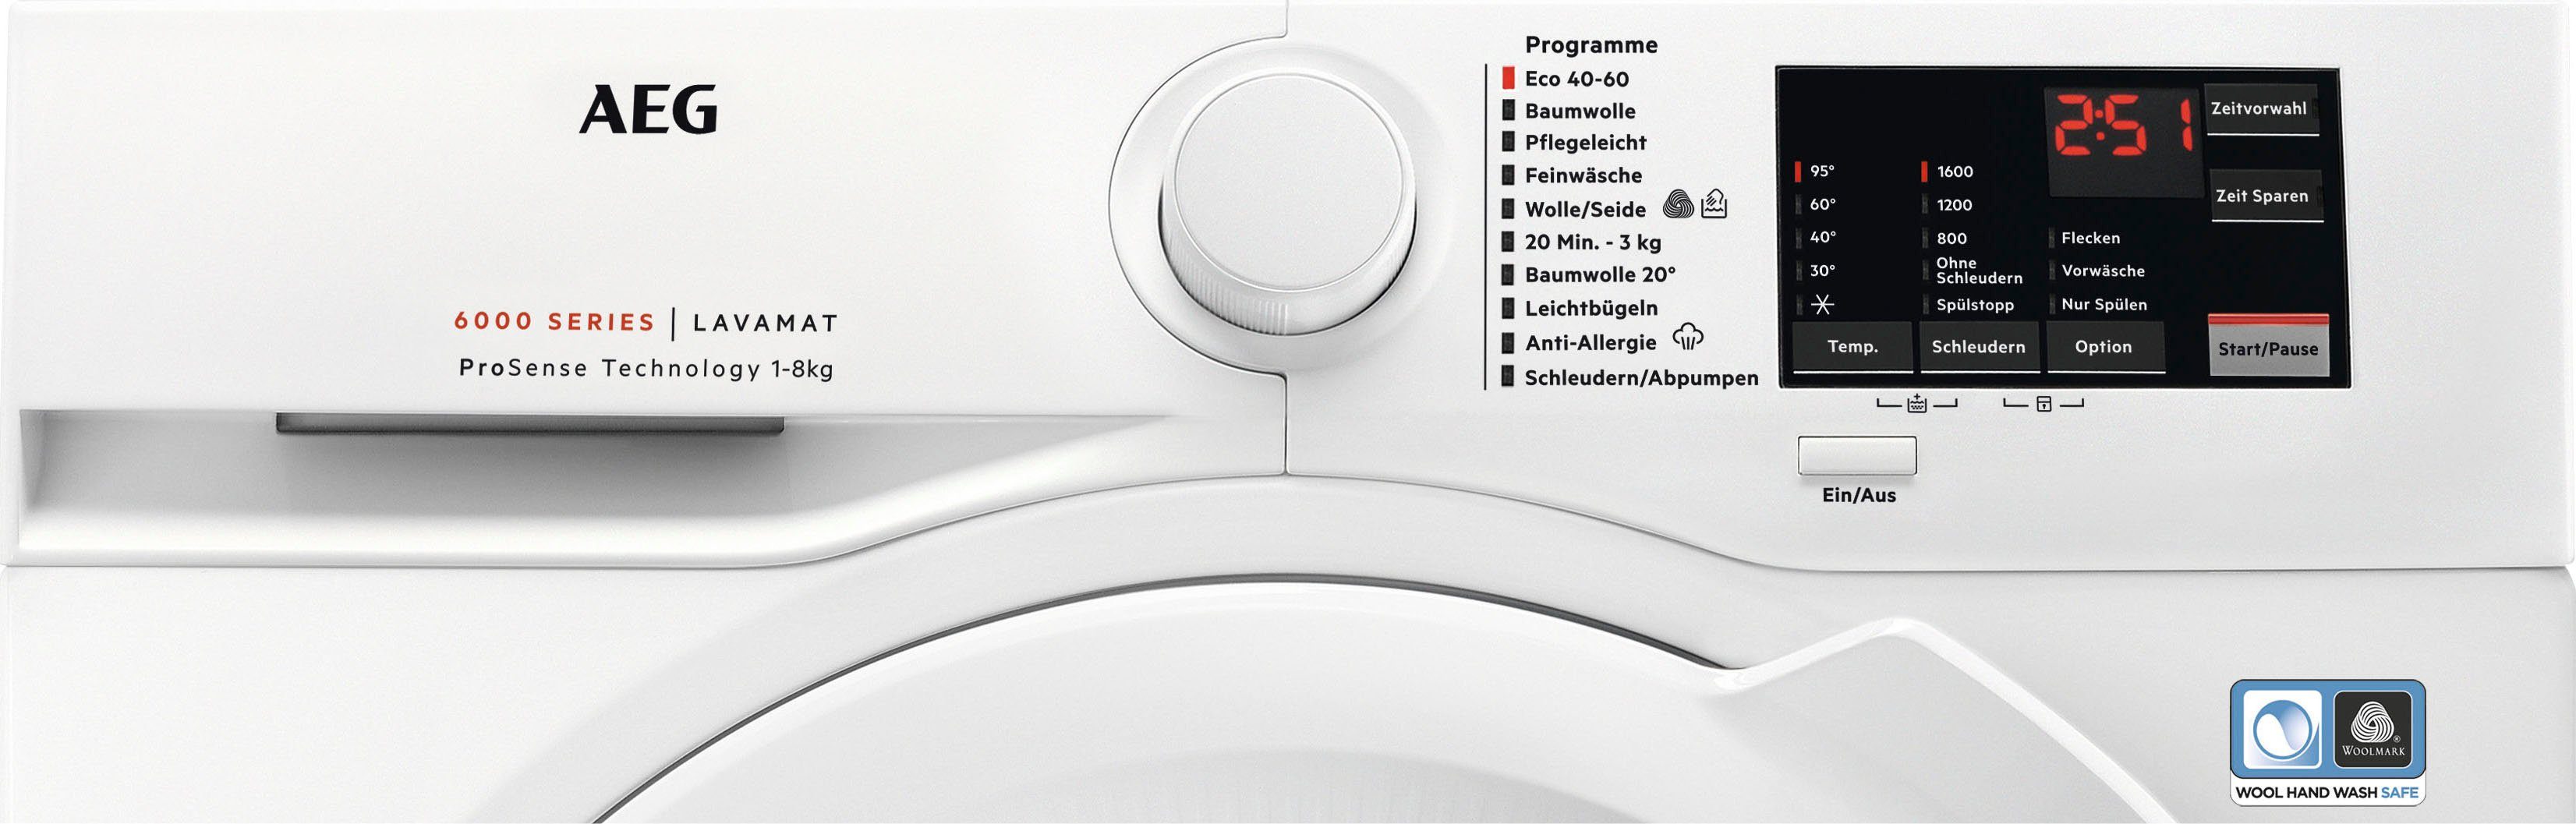 ProSense-Technologie 6000 L6FA68FL, Hygiene-/ kg, Programm 8 mit Serie U/min, Waschmaschine Anti-Allergie Dampf 1600 AEG mit